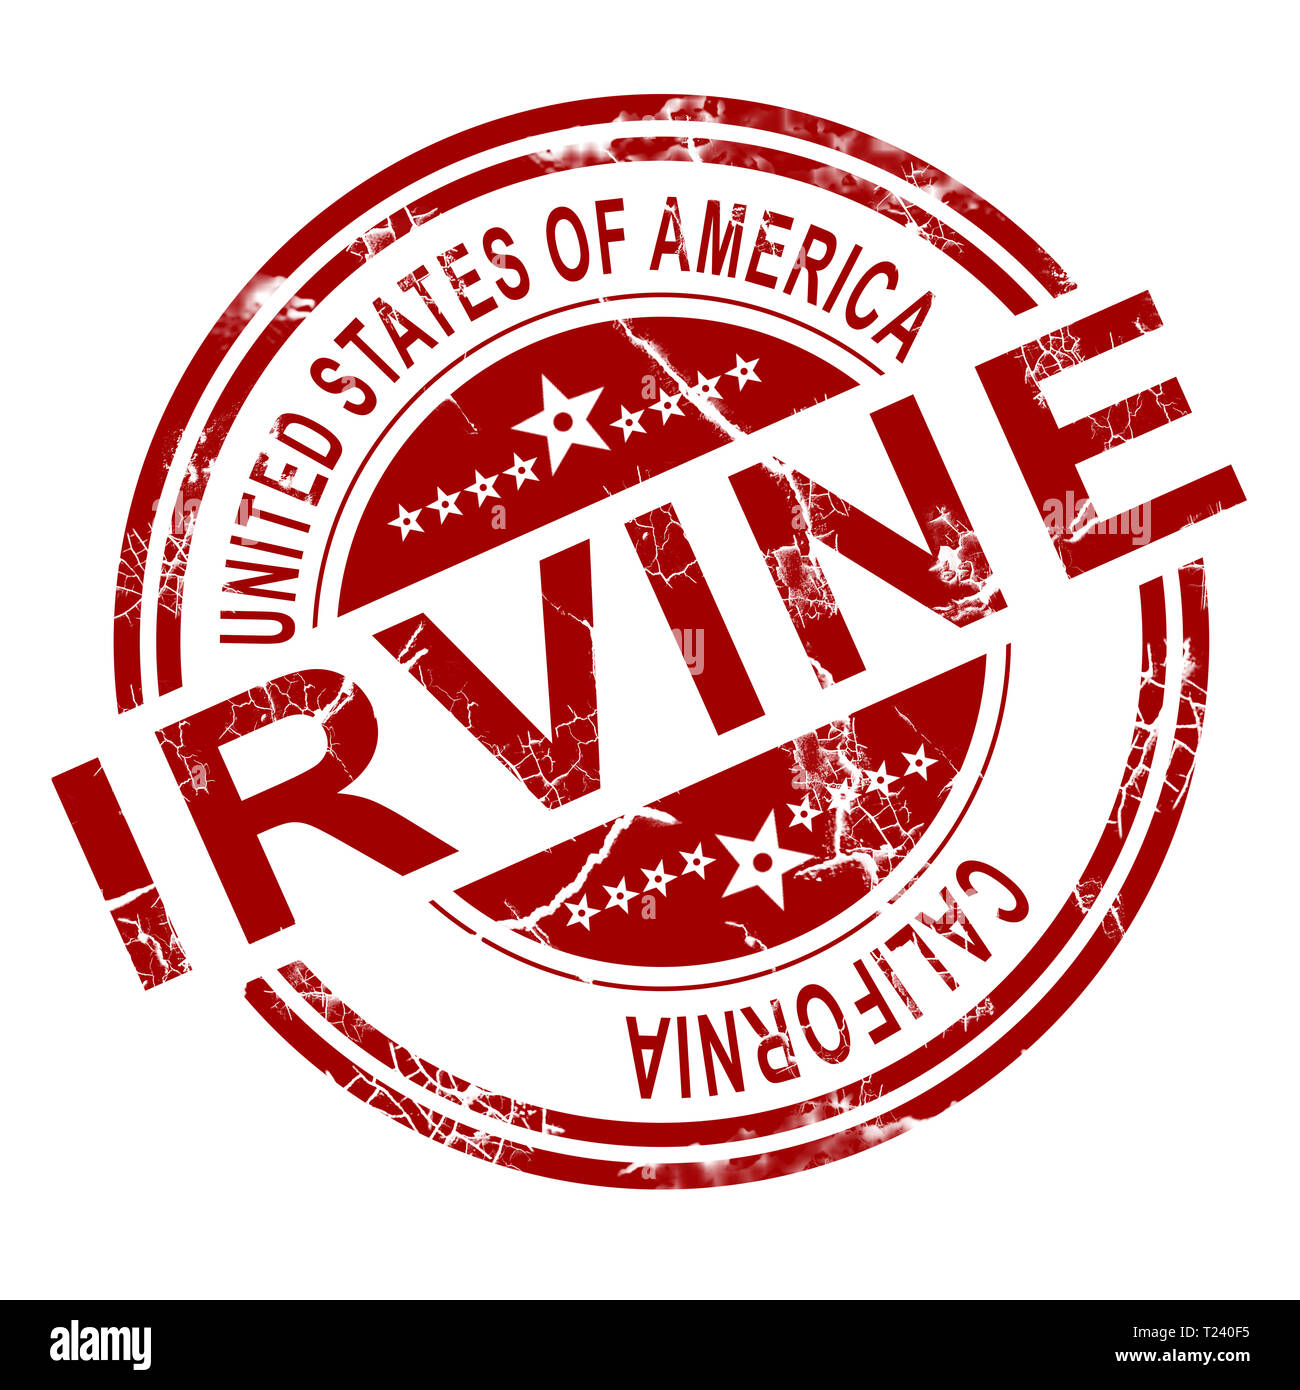 Irvine rouge stamp avec fond blanc, 3D Rendering Banque D'Images